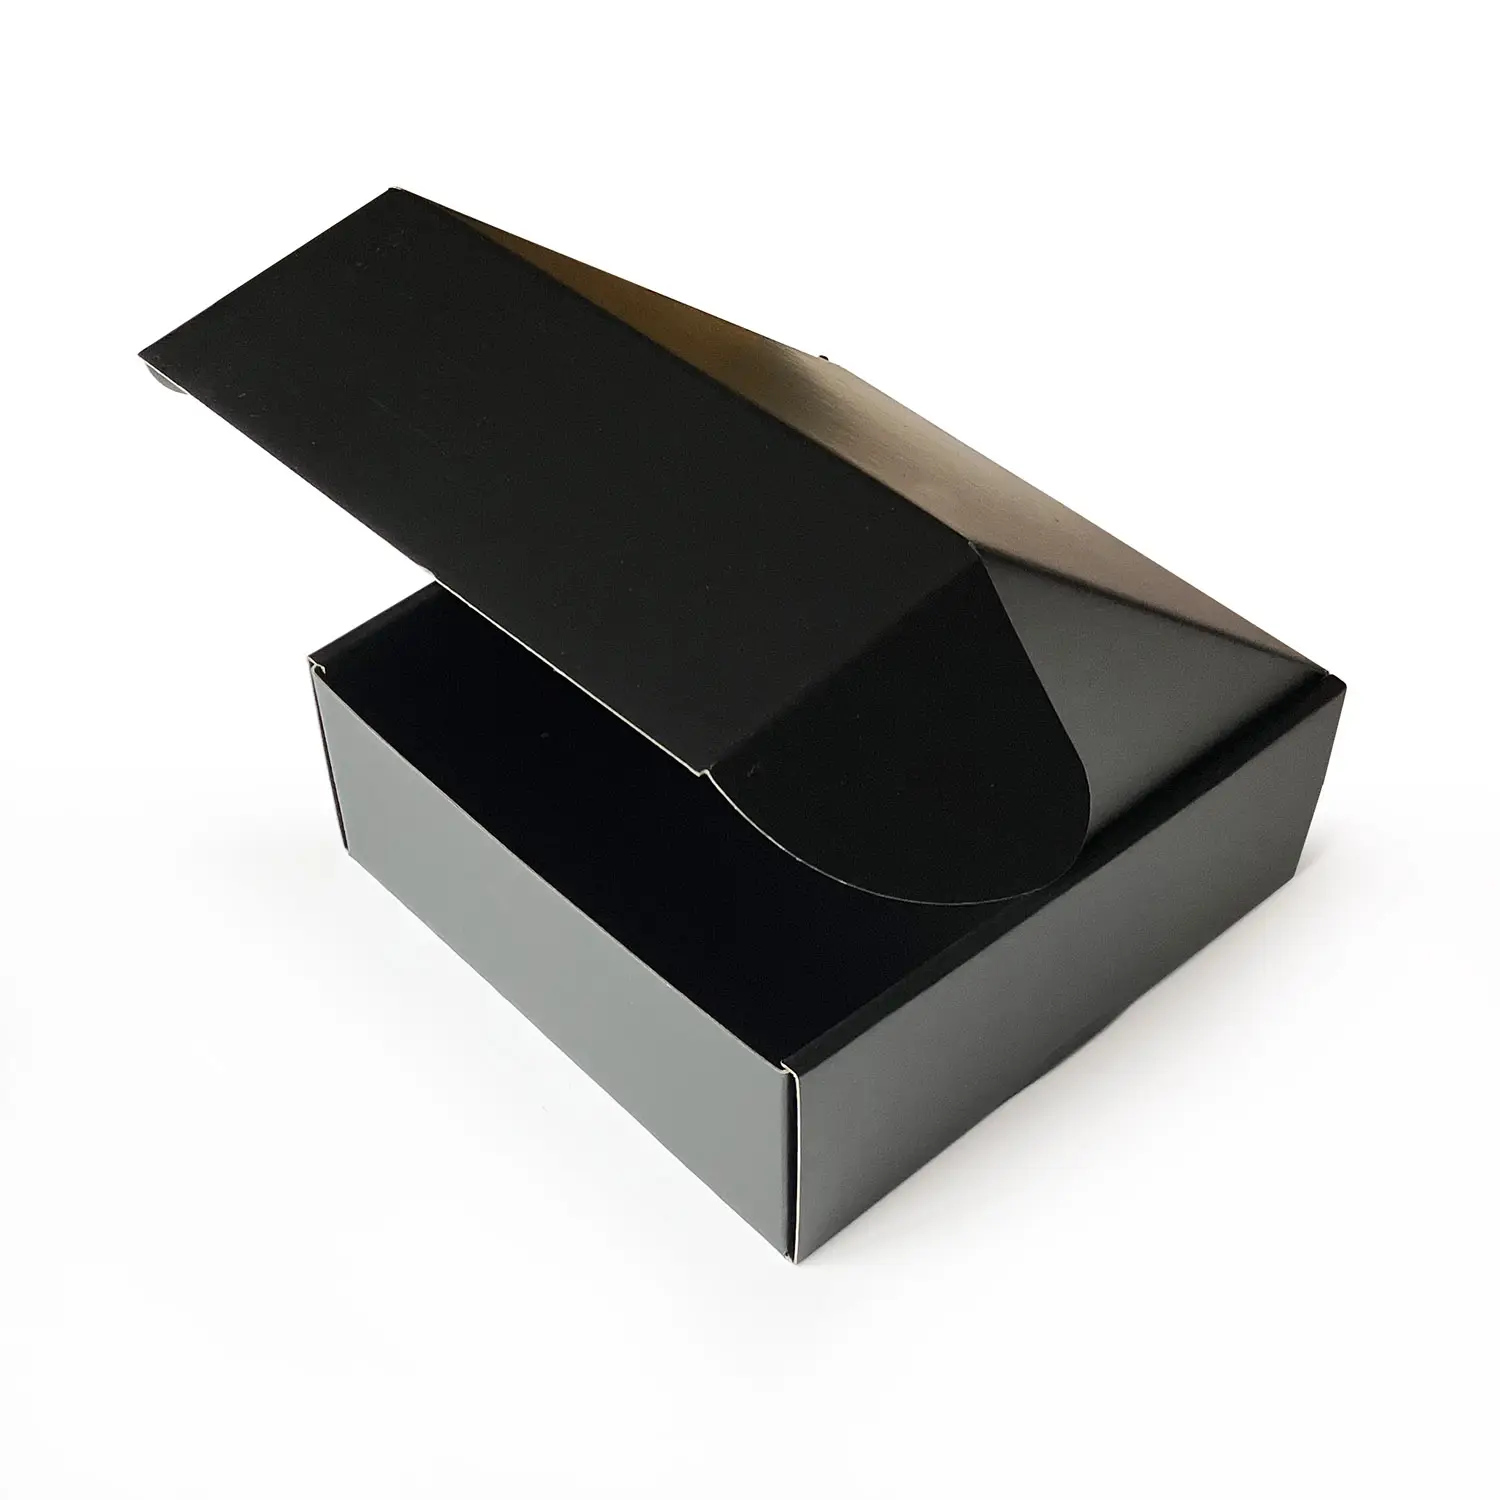 익스프레스 산업용 도매 맞춤형 로고 골판지 블랙 우편함 보호 엠보싱 인쇄 처리 제공